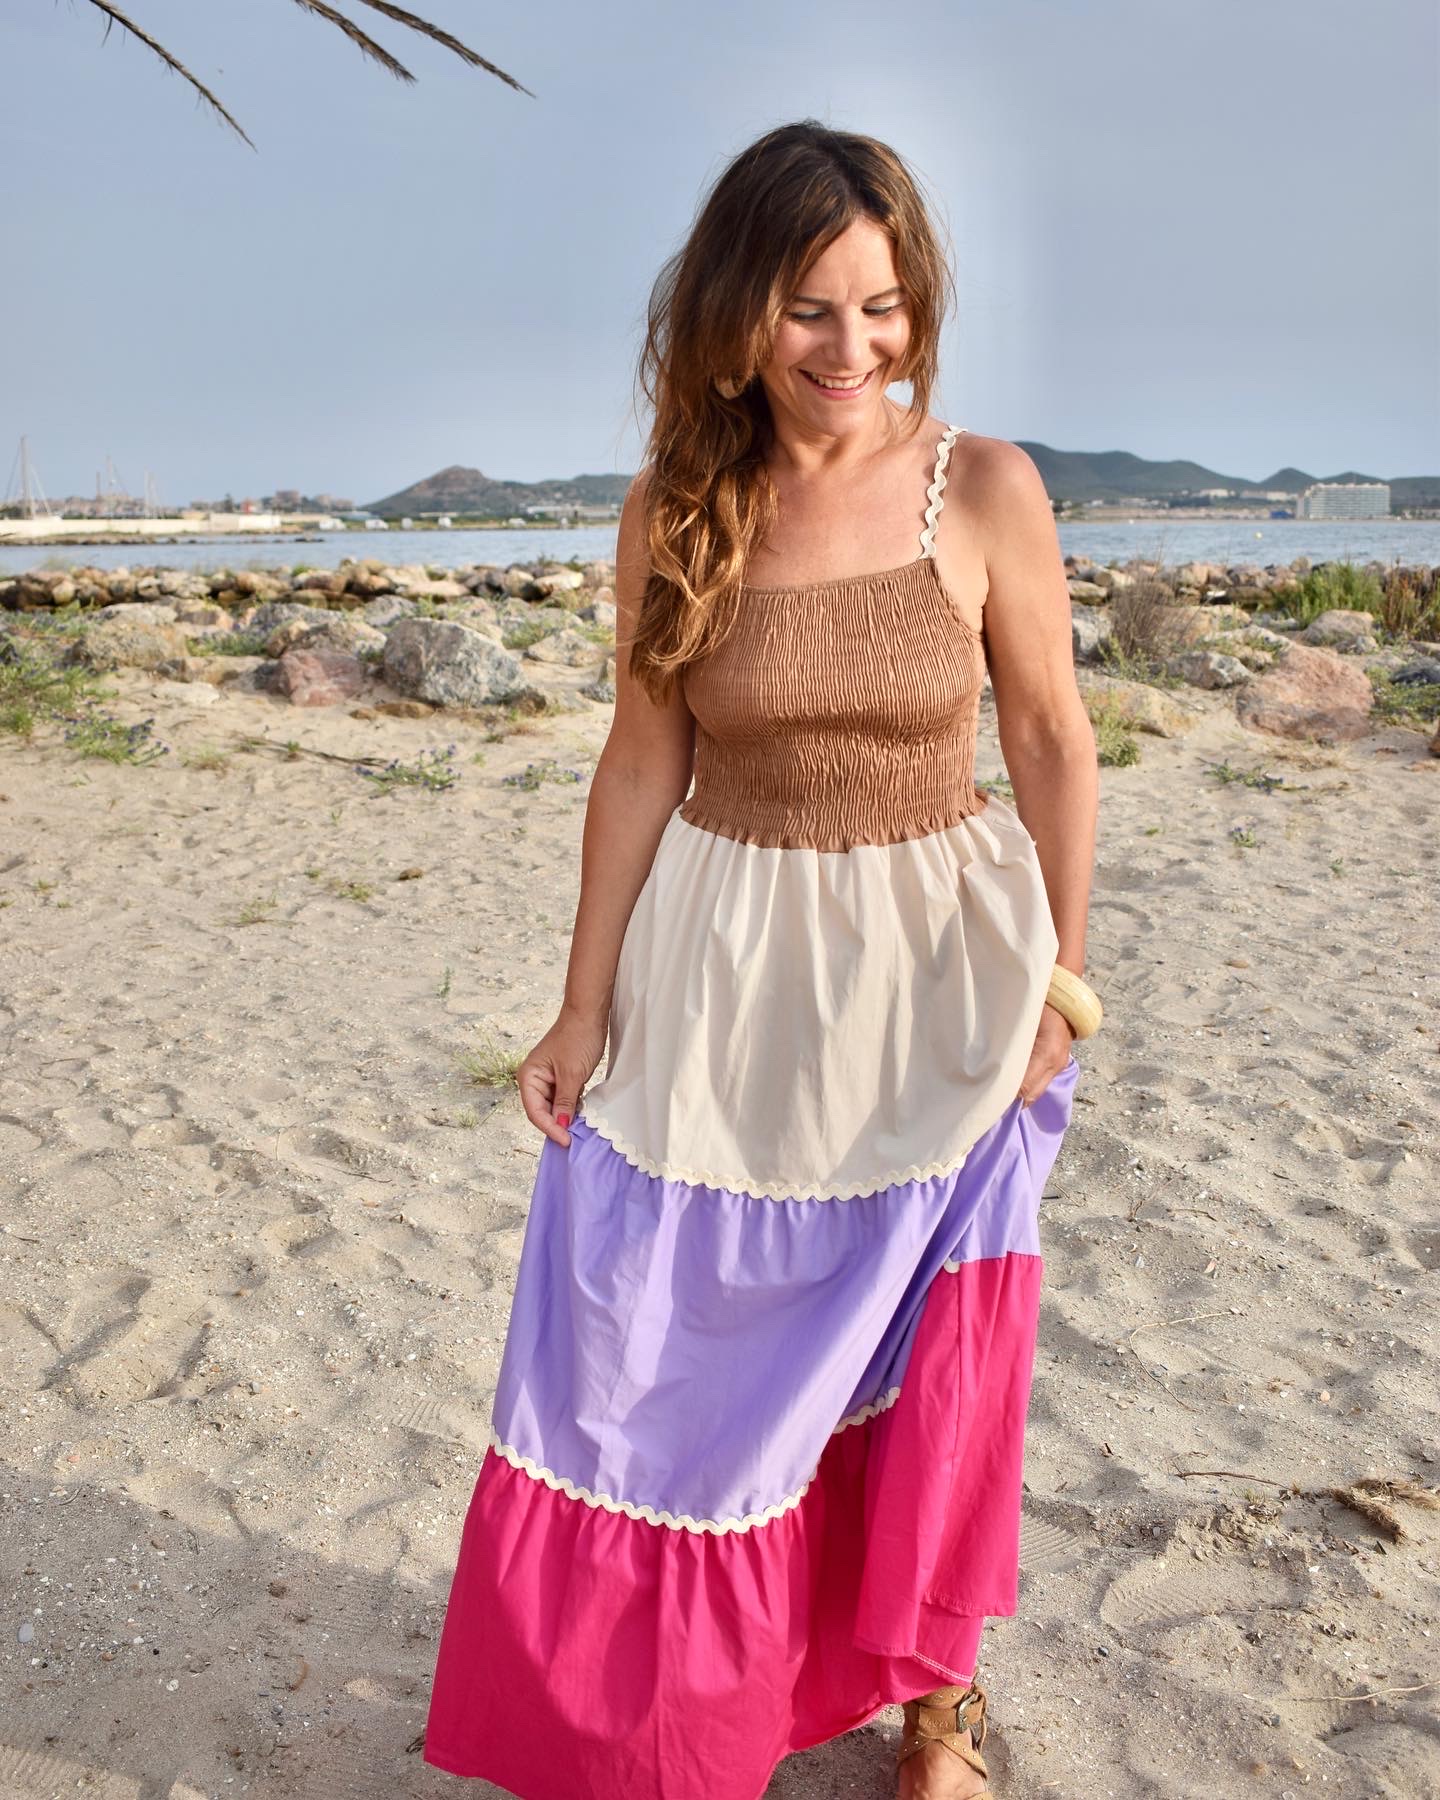 Mujer em la playa llevando vestido largo multicolor.